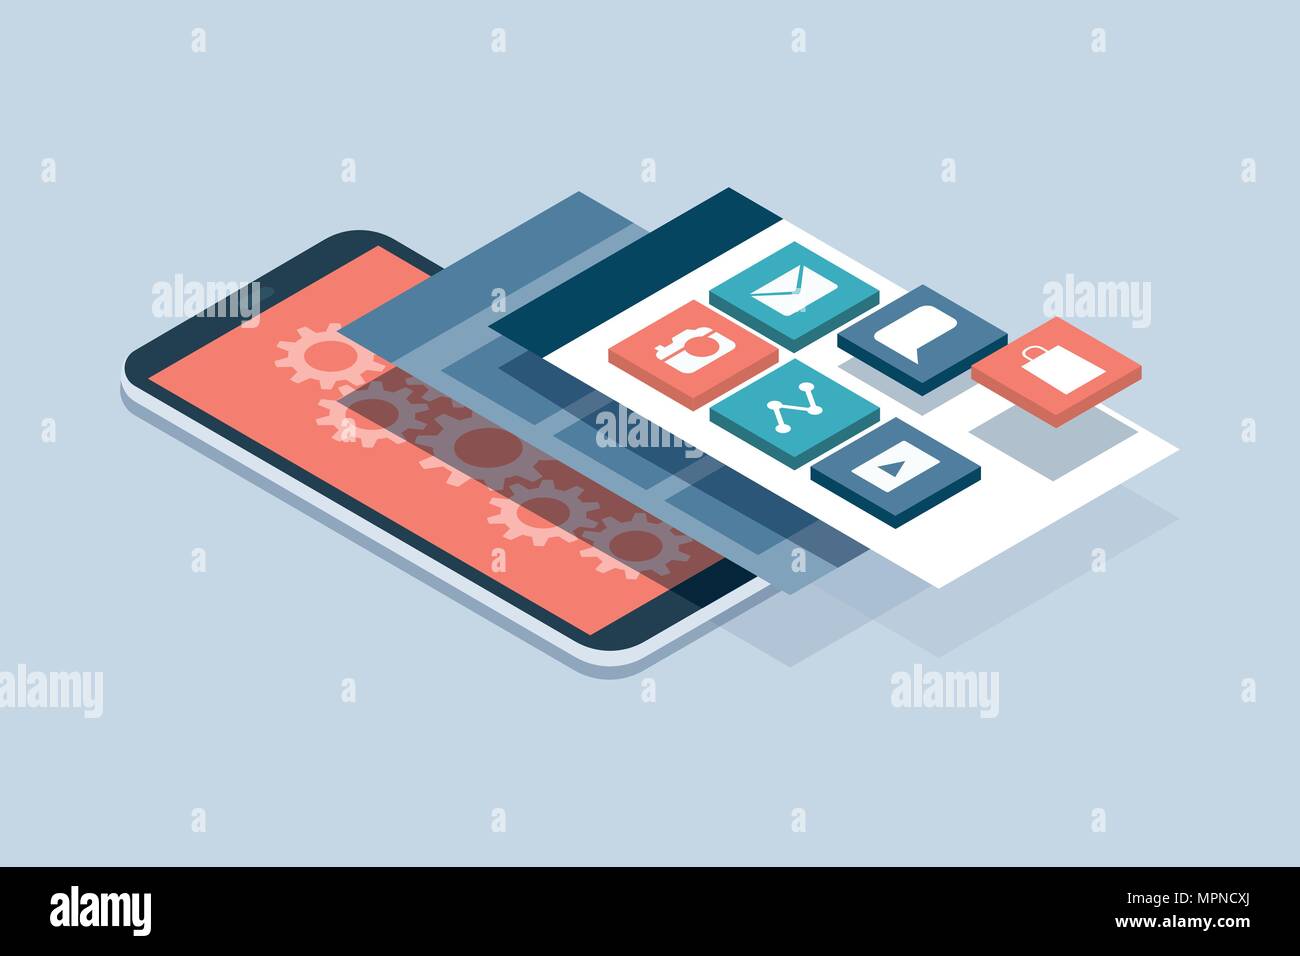 Développement d'applications et web design : des interfaces utilisateur en couches et écrans sur un smartphone à écran tactile Illustration de Vecteur